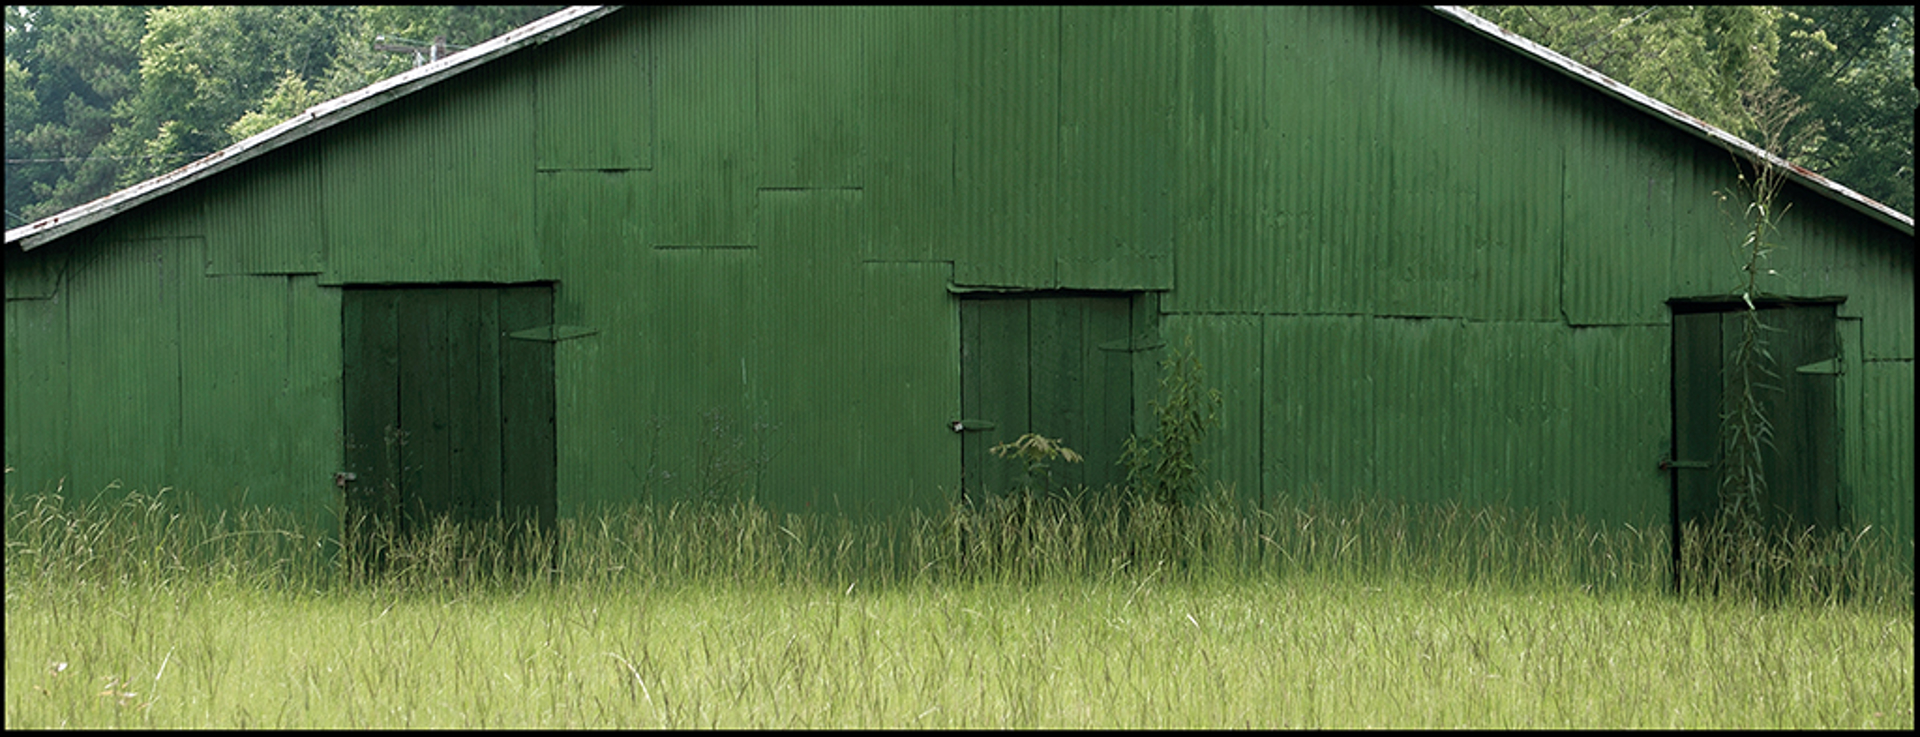 Green Warehouse, Hale County, AL by Jerry Siegel